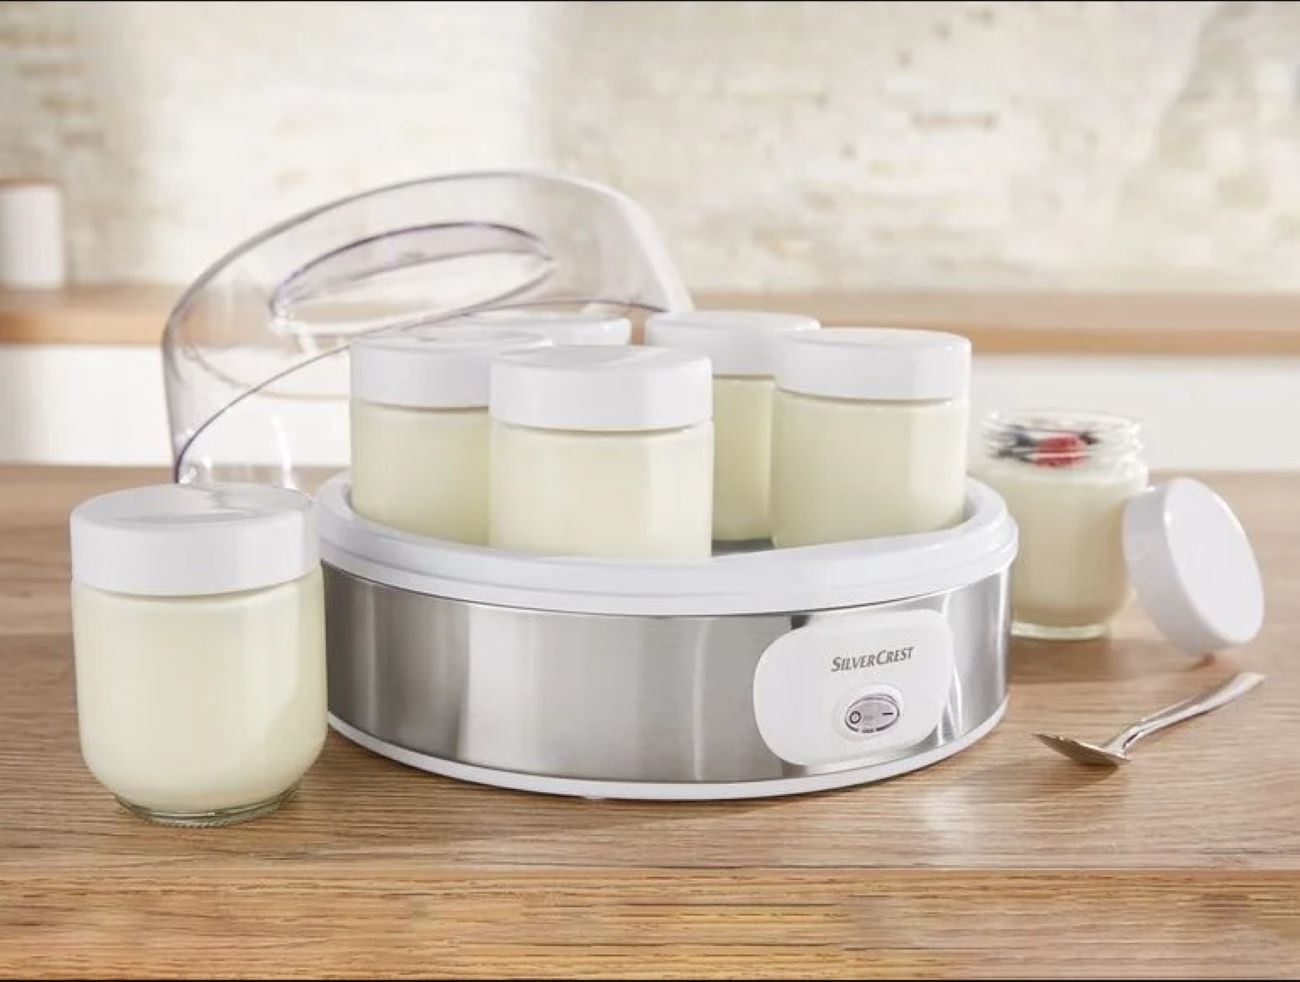 Cómo funciona una yogurtera? Consejos de uso - Euronics